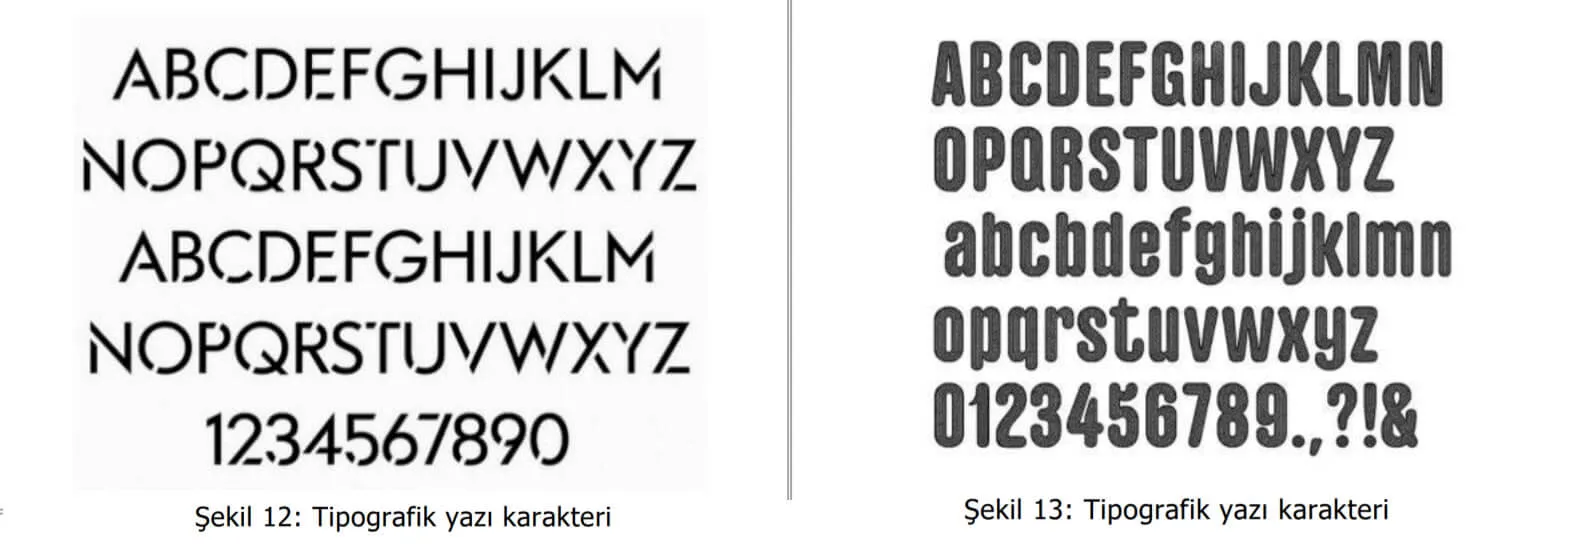 tipografik yazı karakter örnekleri-polatlı patent